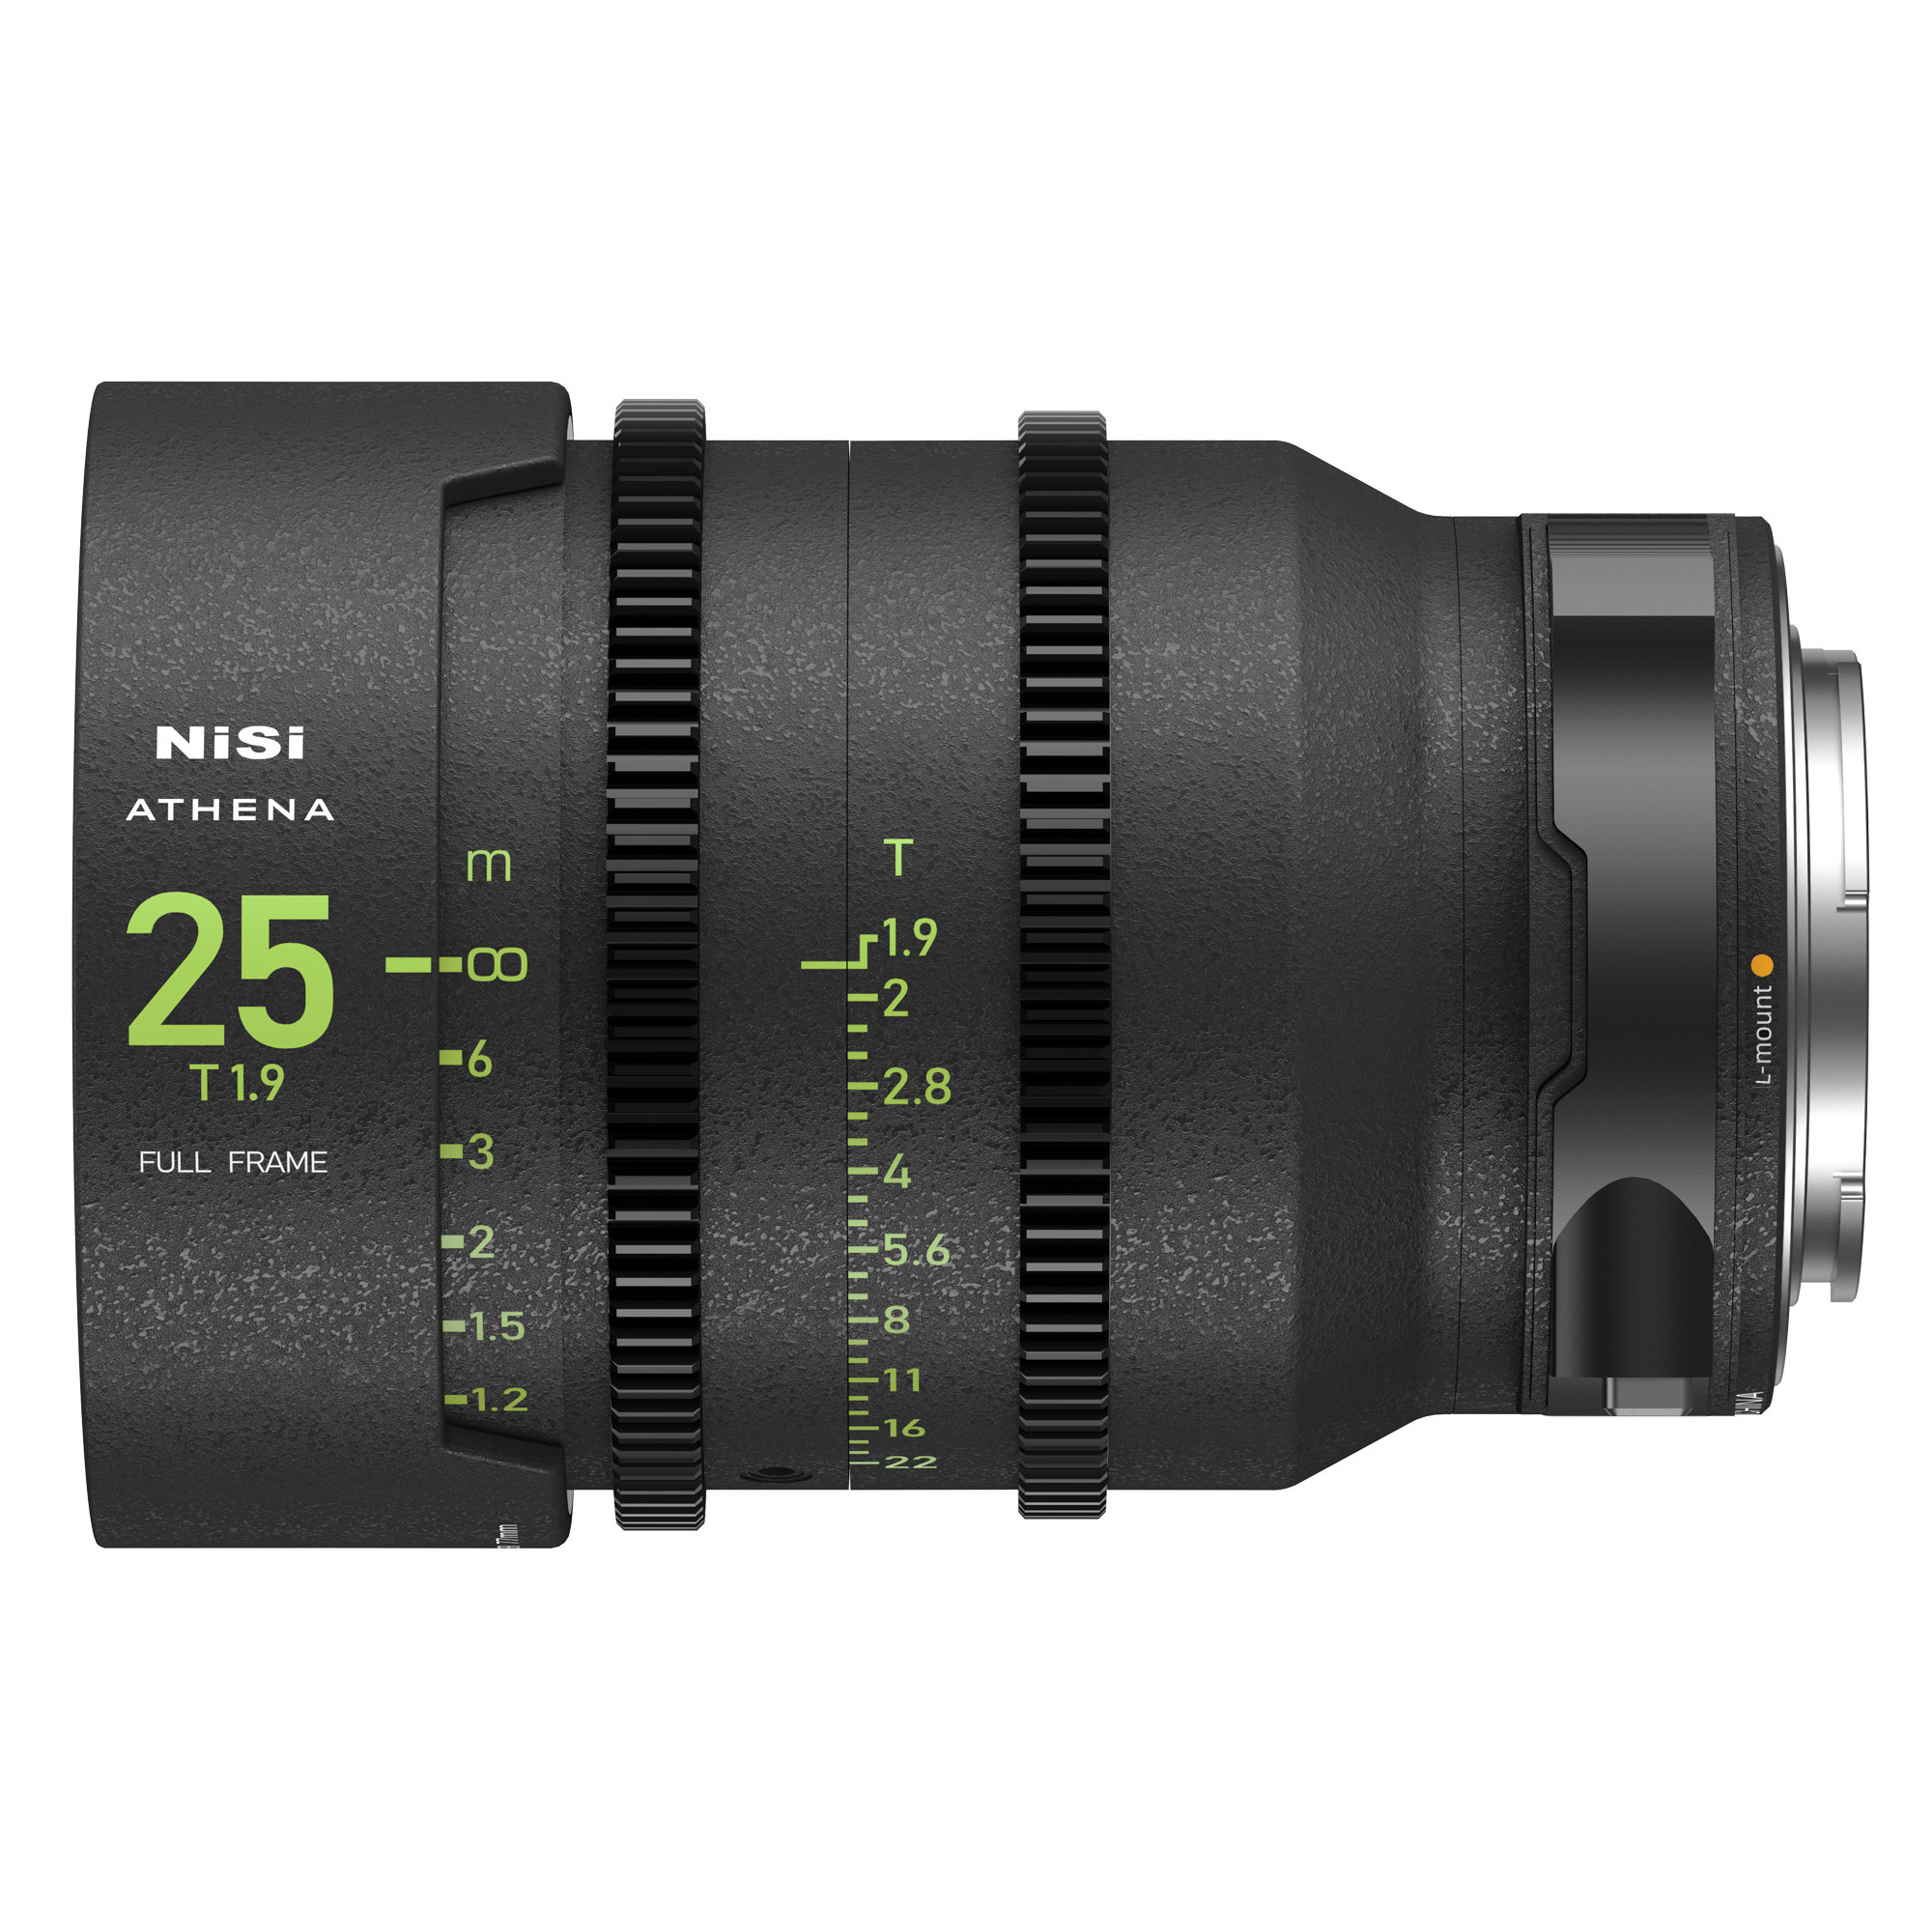 NiSi ATHENA PRIME 25mm T1.9 Full-Frame Lens (L Mount)